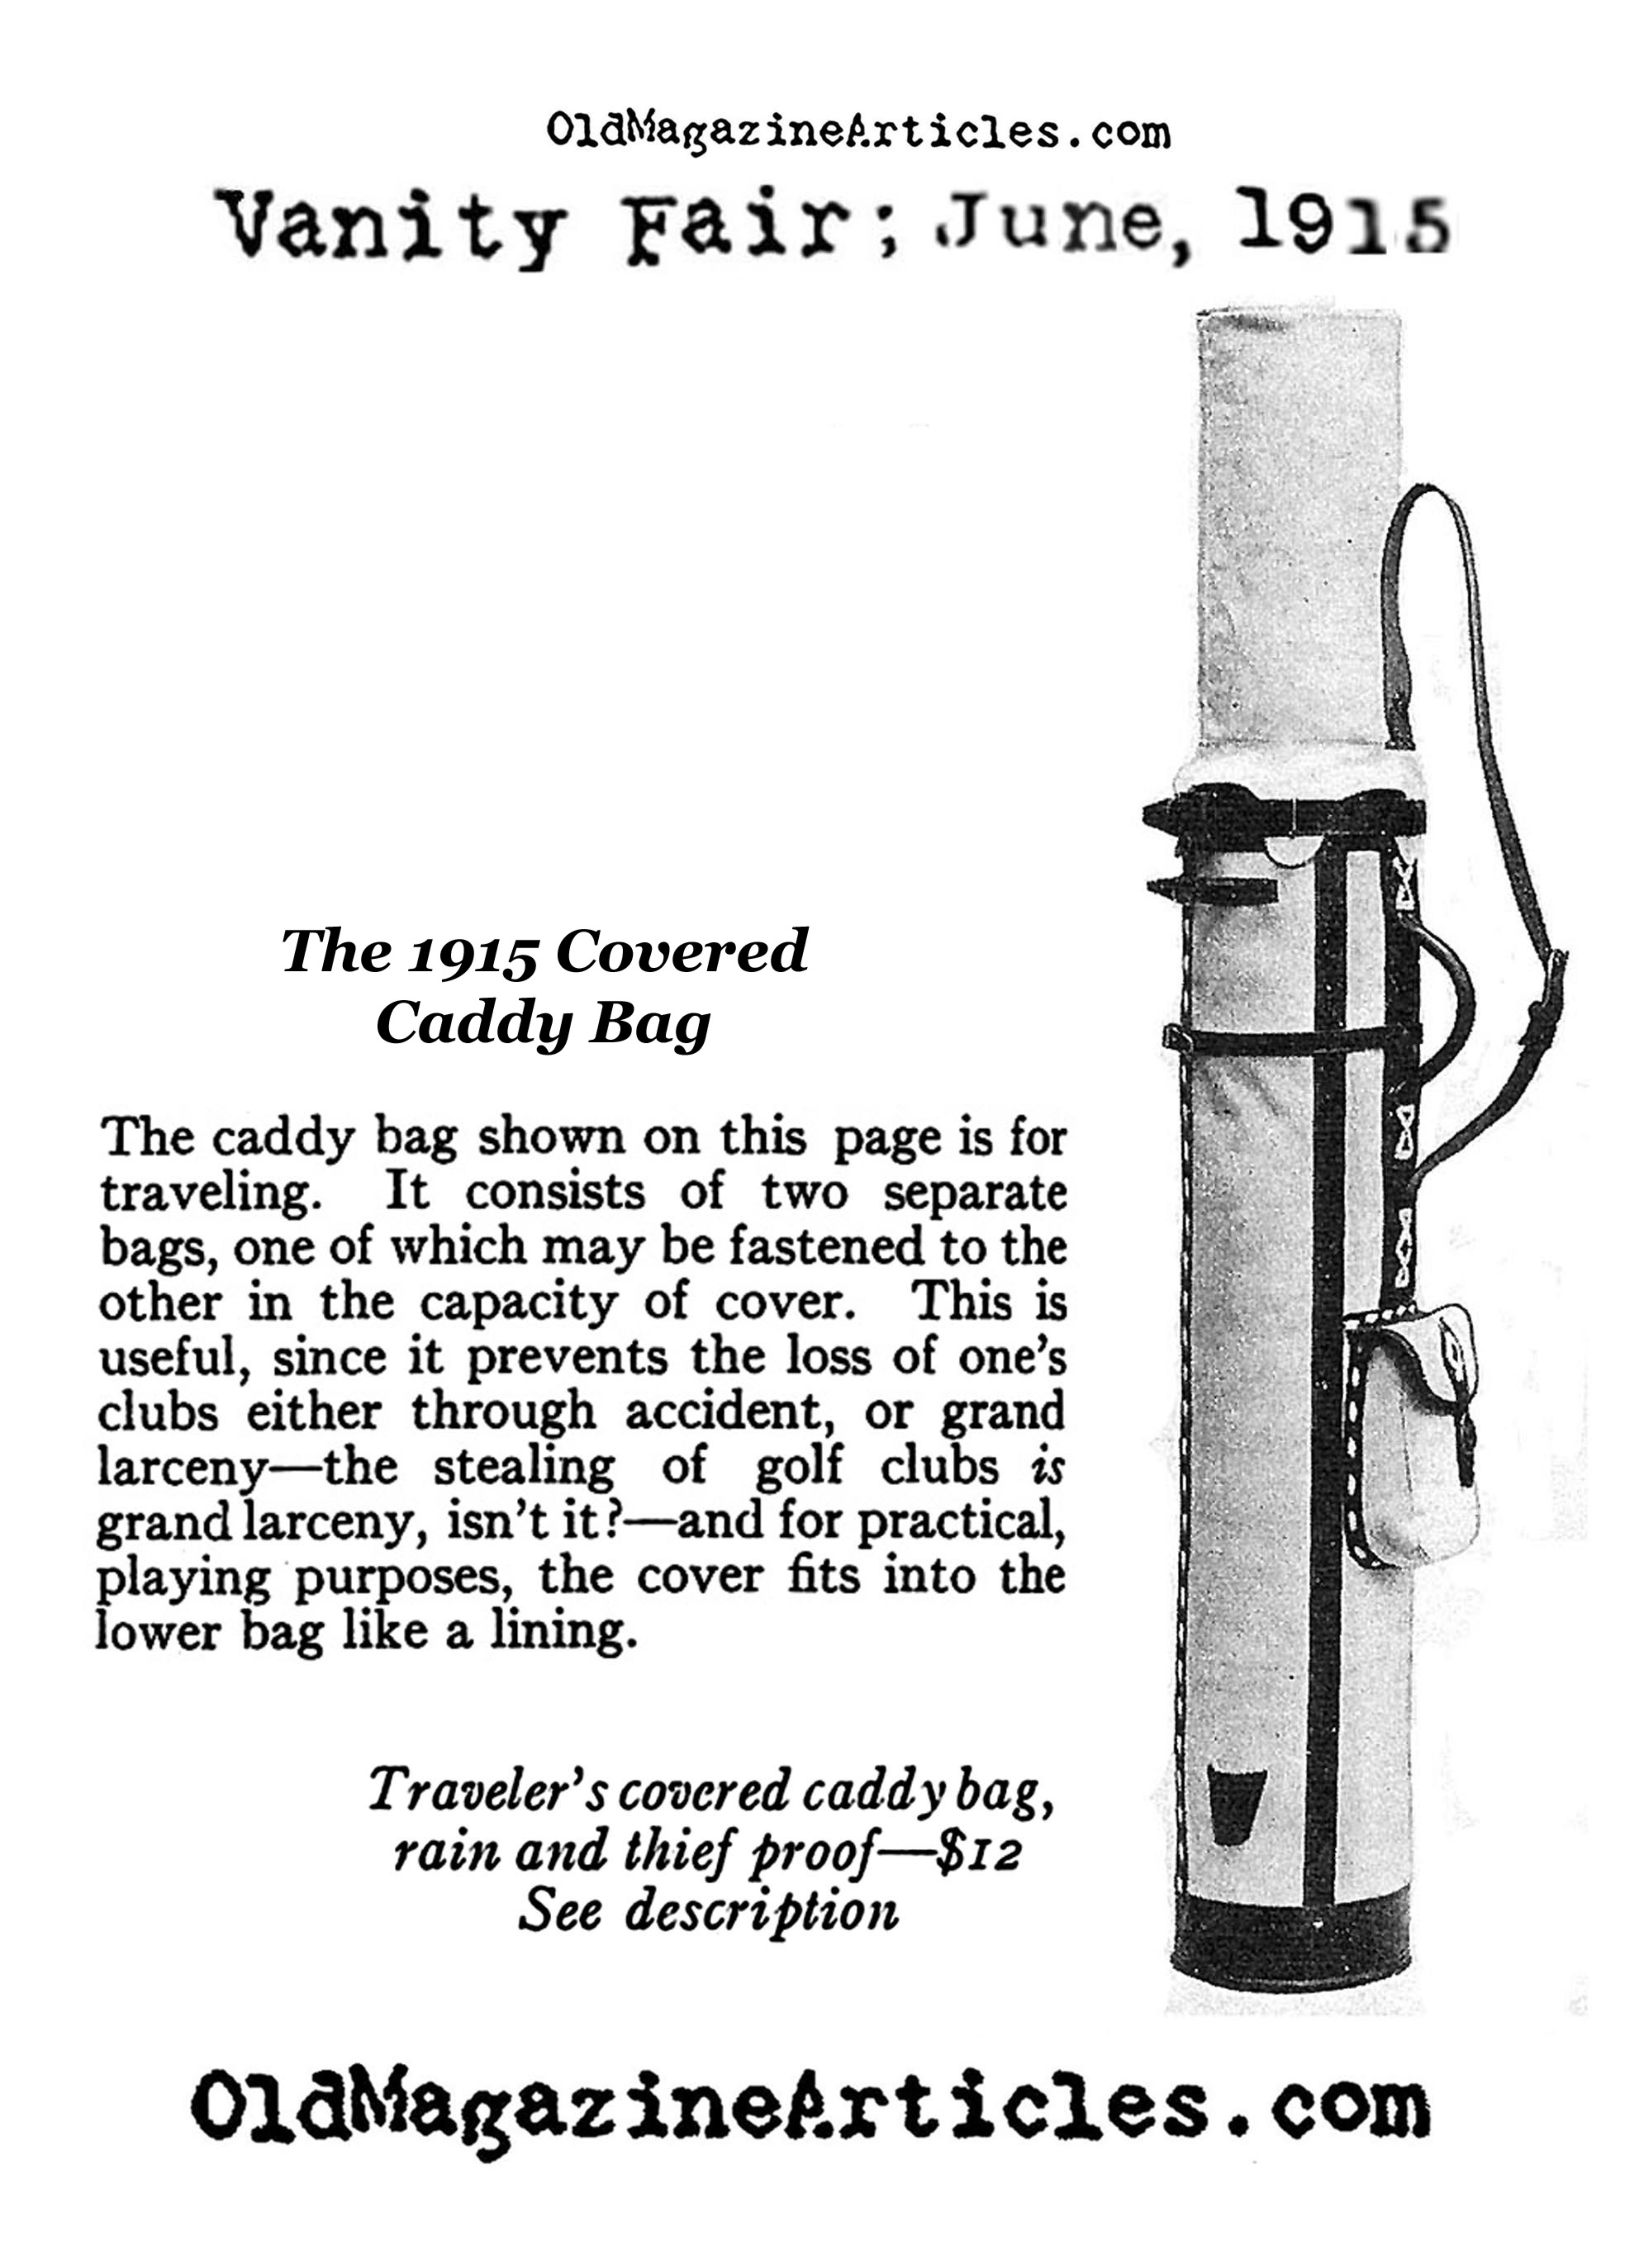 A Covered Golf Caddy Bag  (Vanity Fair, 1915)